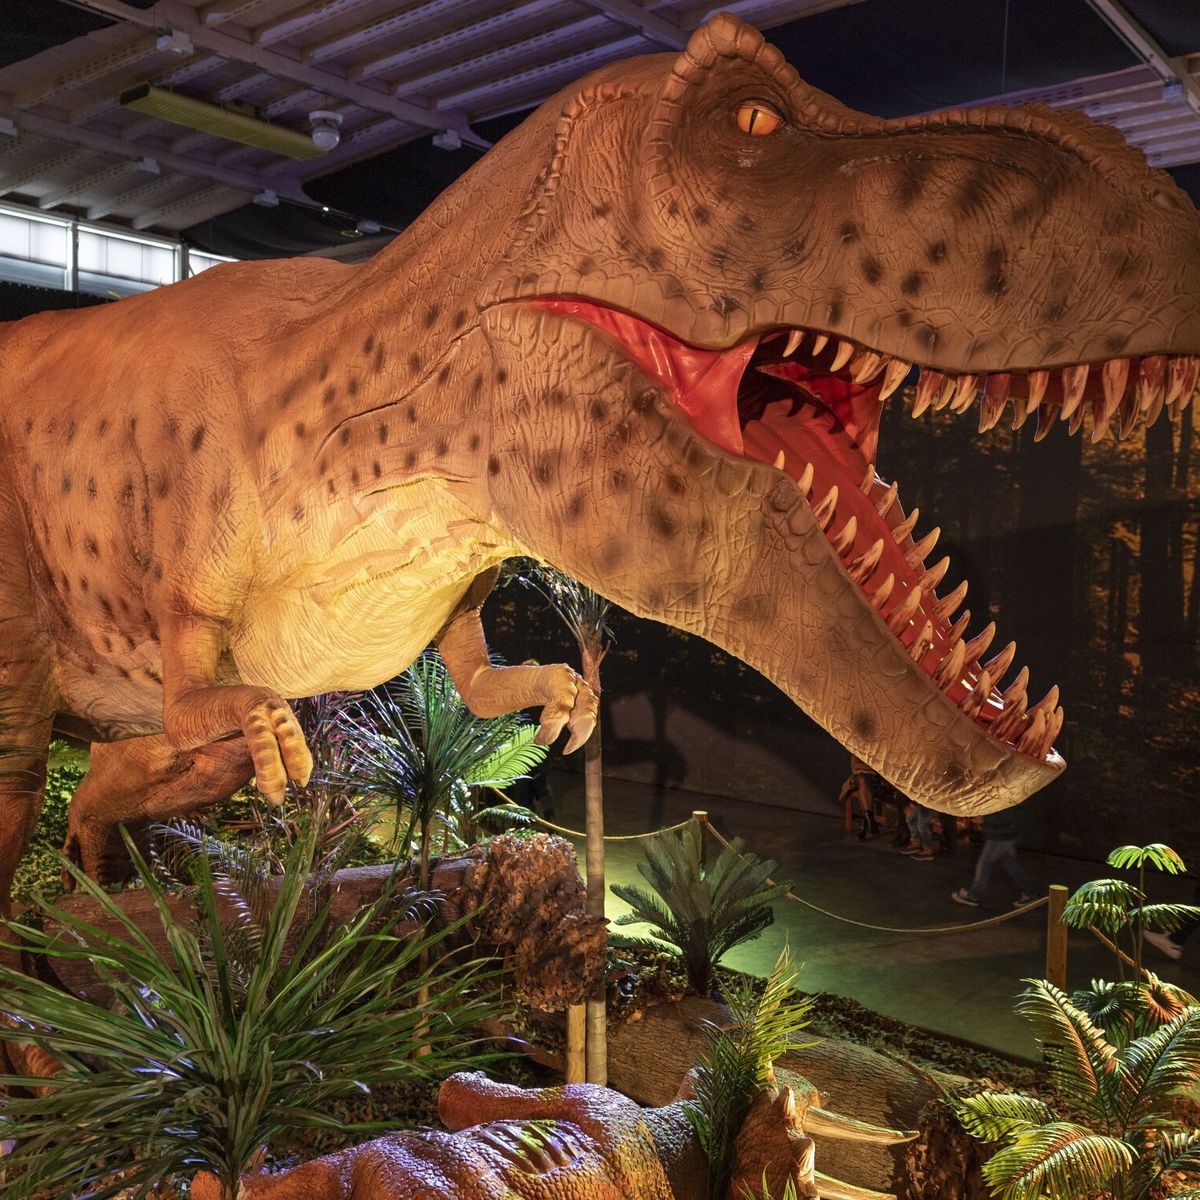 Por qué los tiranosaurios rex tenían los brazos tan pequeños?